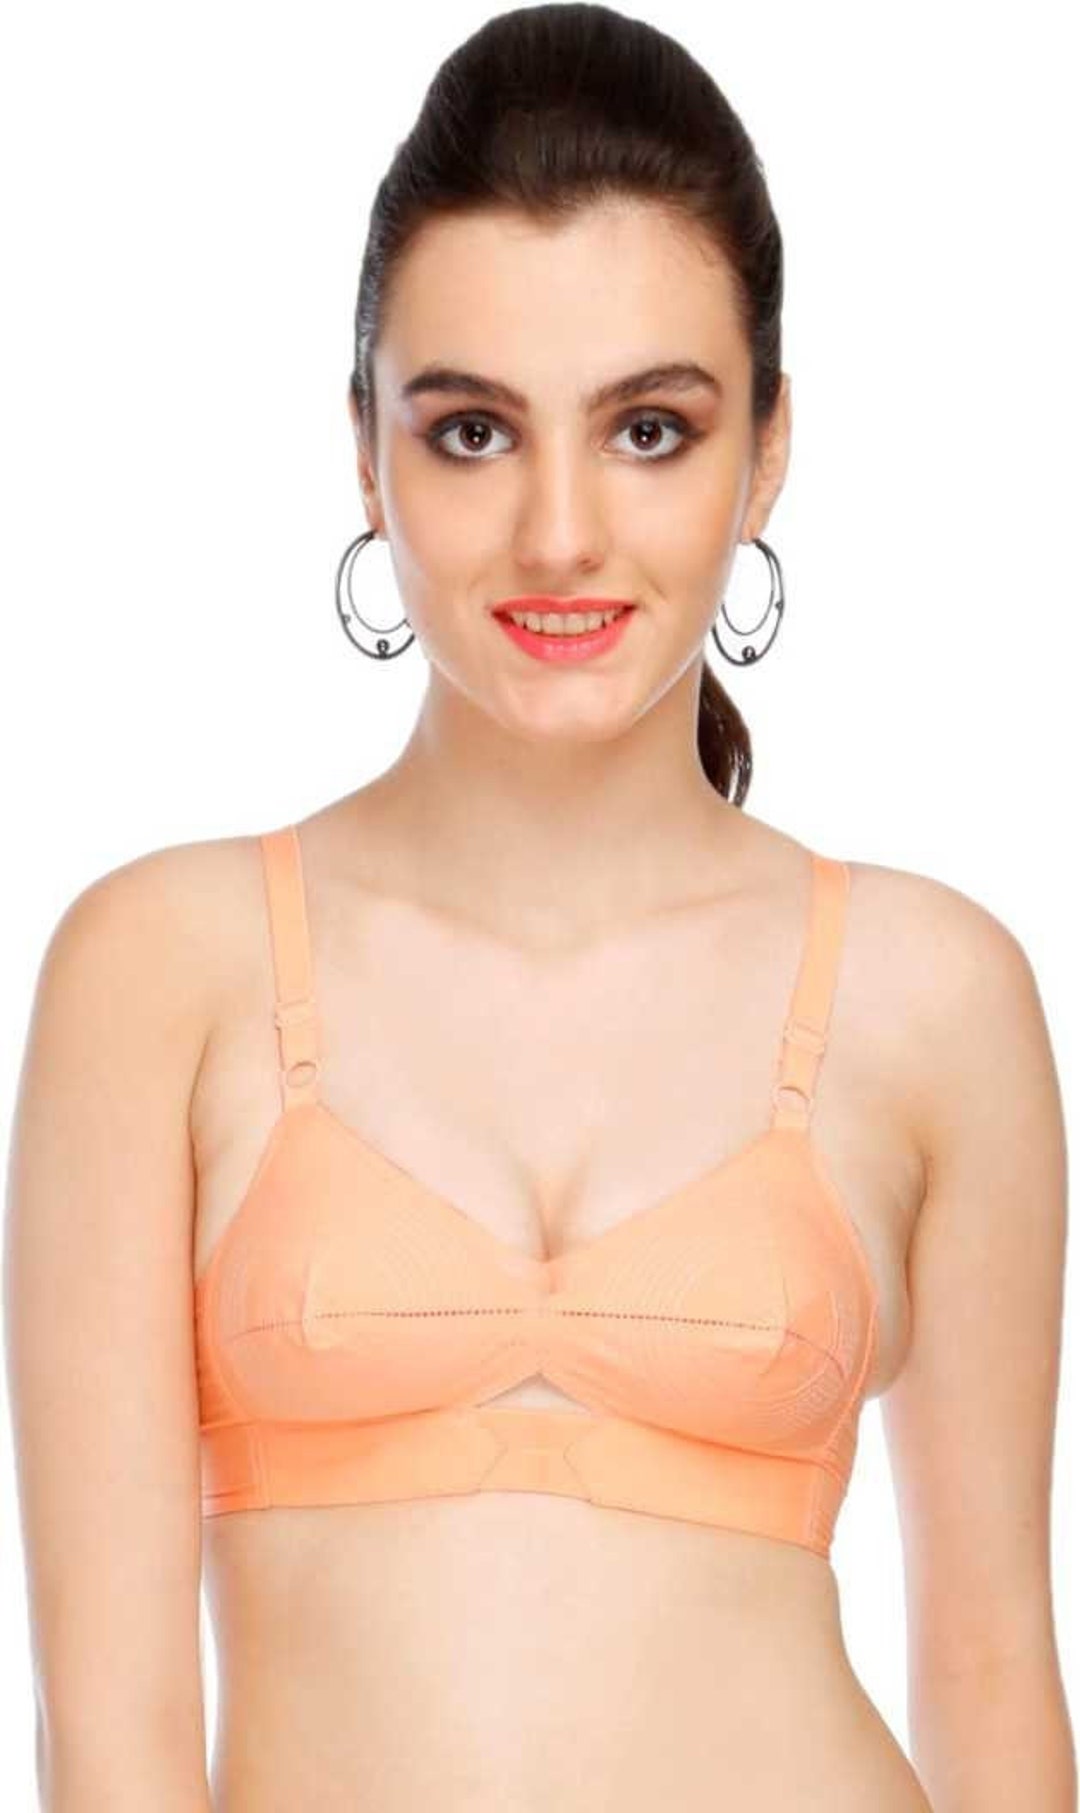 Winsome winsome saree bra Women Full Coverage Non Padded Bra - Buy Winsome  winsome saree bra Women Full Coverage Non Padded Bra Online at Best Prices  in India